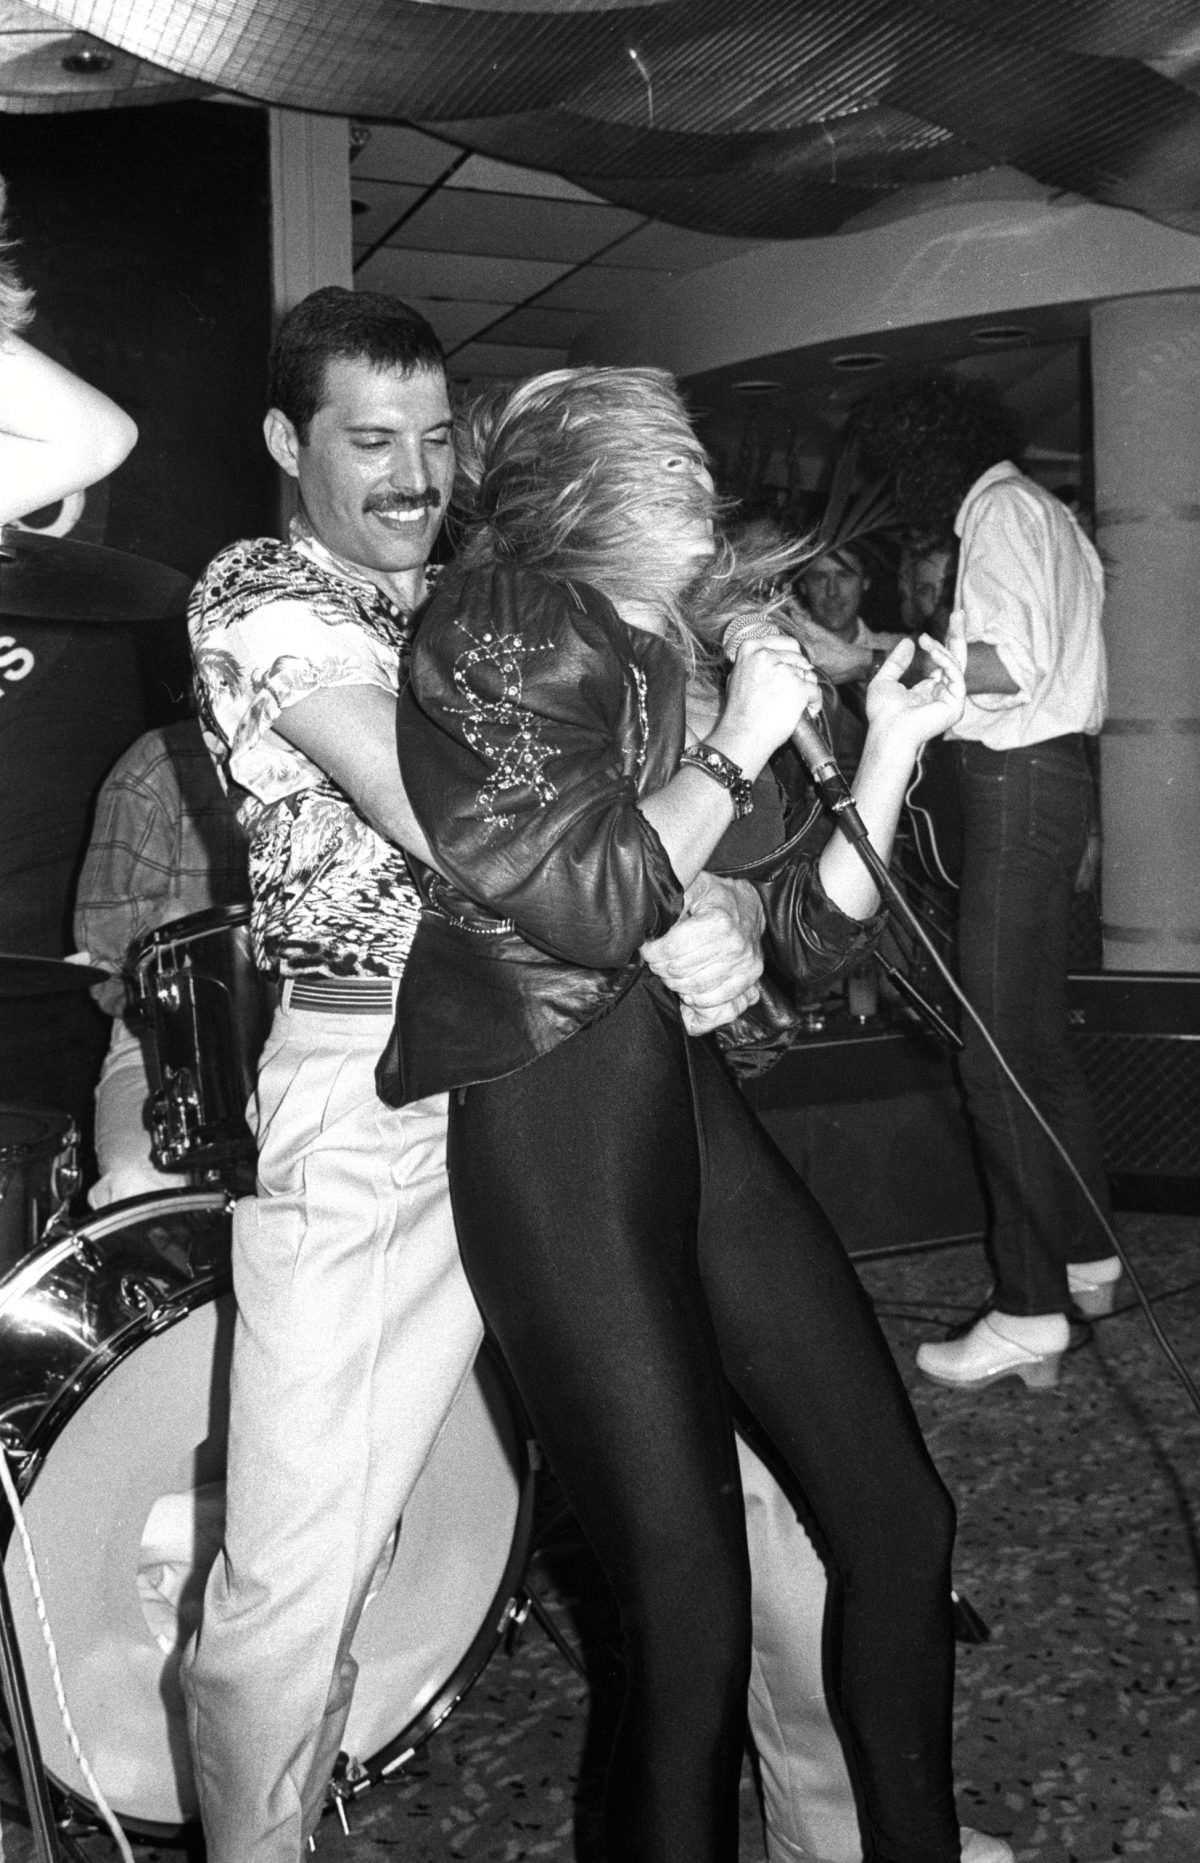 Freddie Mercury and Samantha Fox dancing, 1968